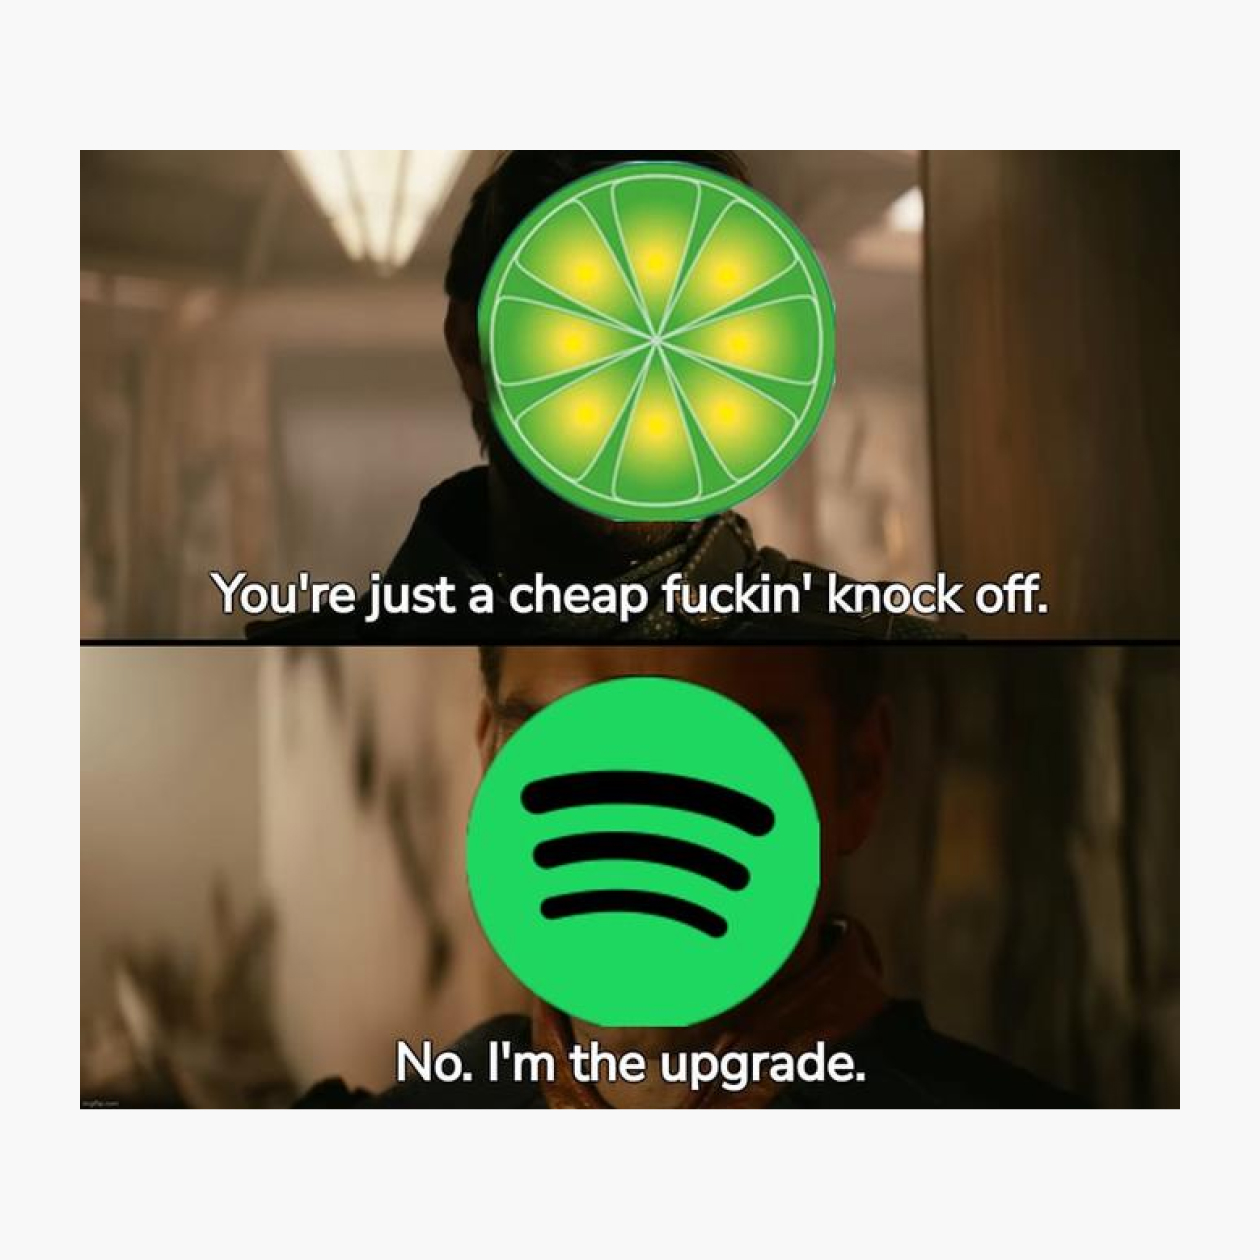 Базовая версия мема: пользователи сравнивают более старую программу для прослушивания музыки LimeWire с более современной Spotify. Источник: Know Your Meme